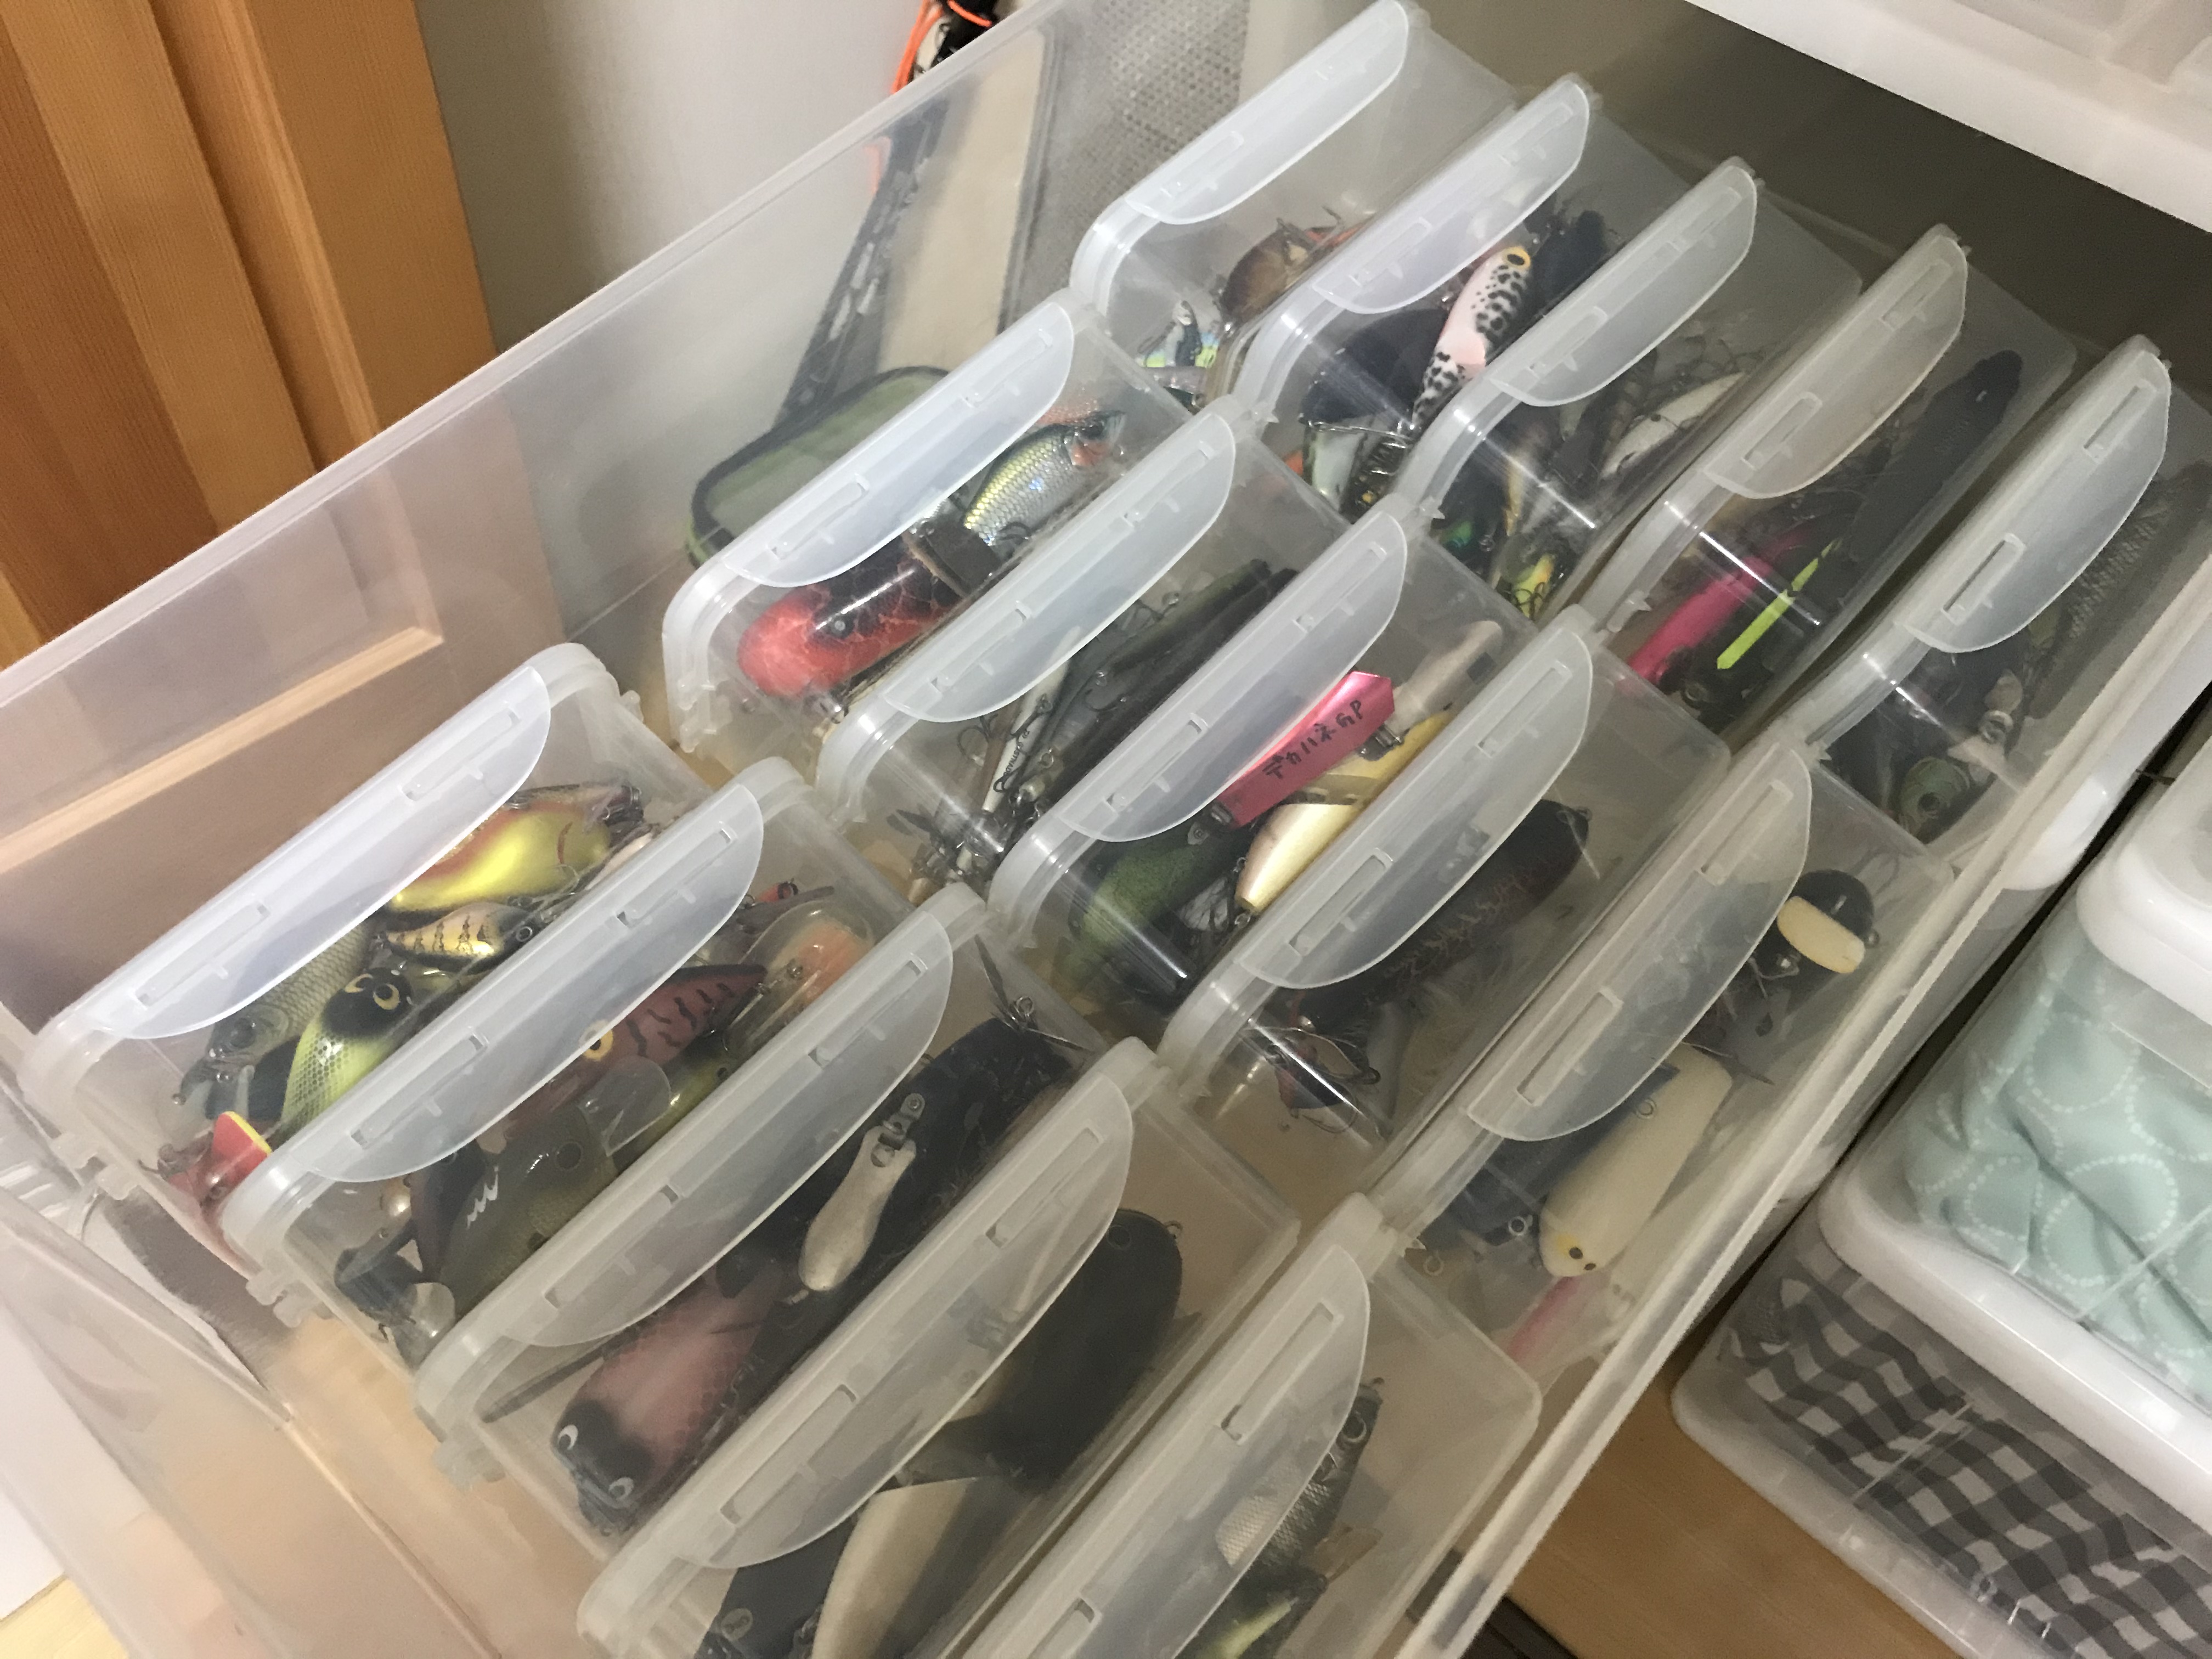 溢れる釣り道具 どう整理する 釣り具の整理整頓 収納方法を考える ナナブンノニブログ